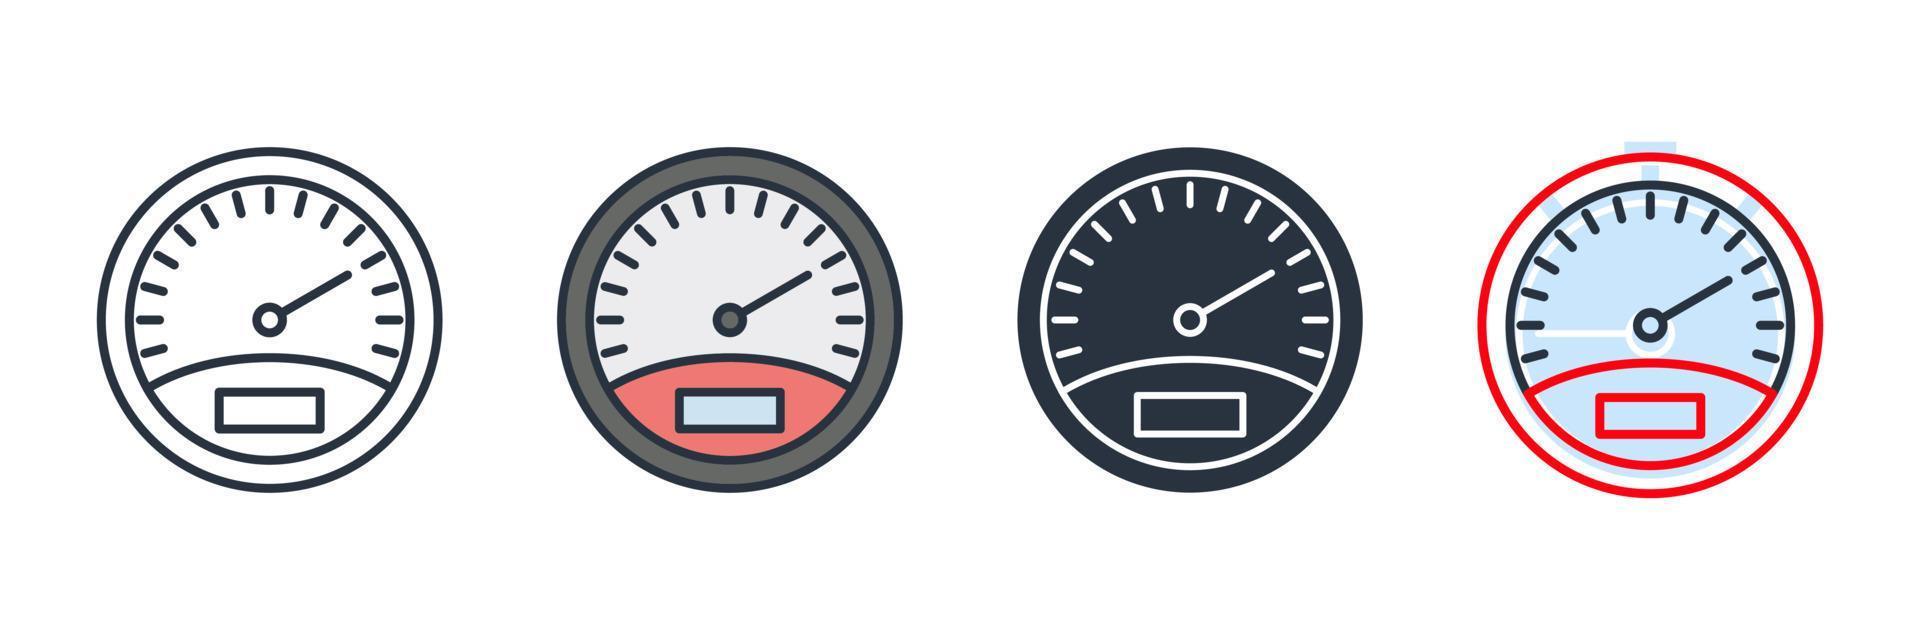 snelheidsmeter pictogram logo vectorillustratie. snelheidsindicator symboolsjabloon voor grafische en webdesigncollectie vector